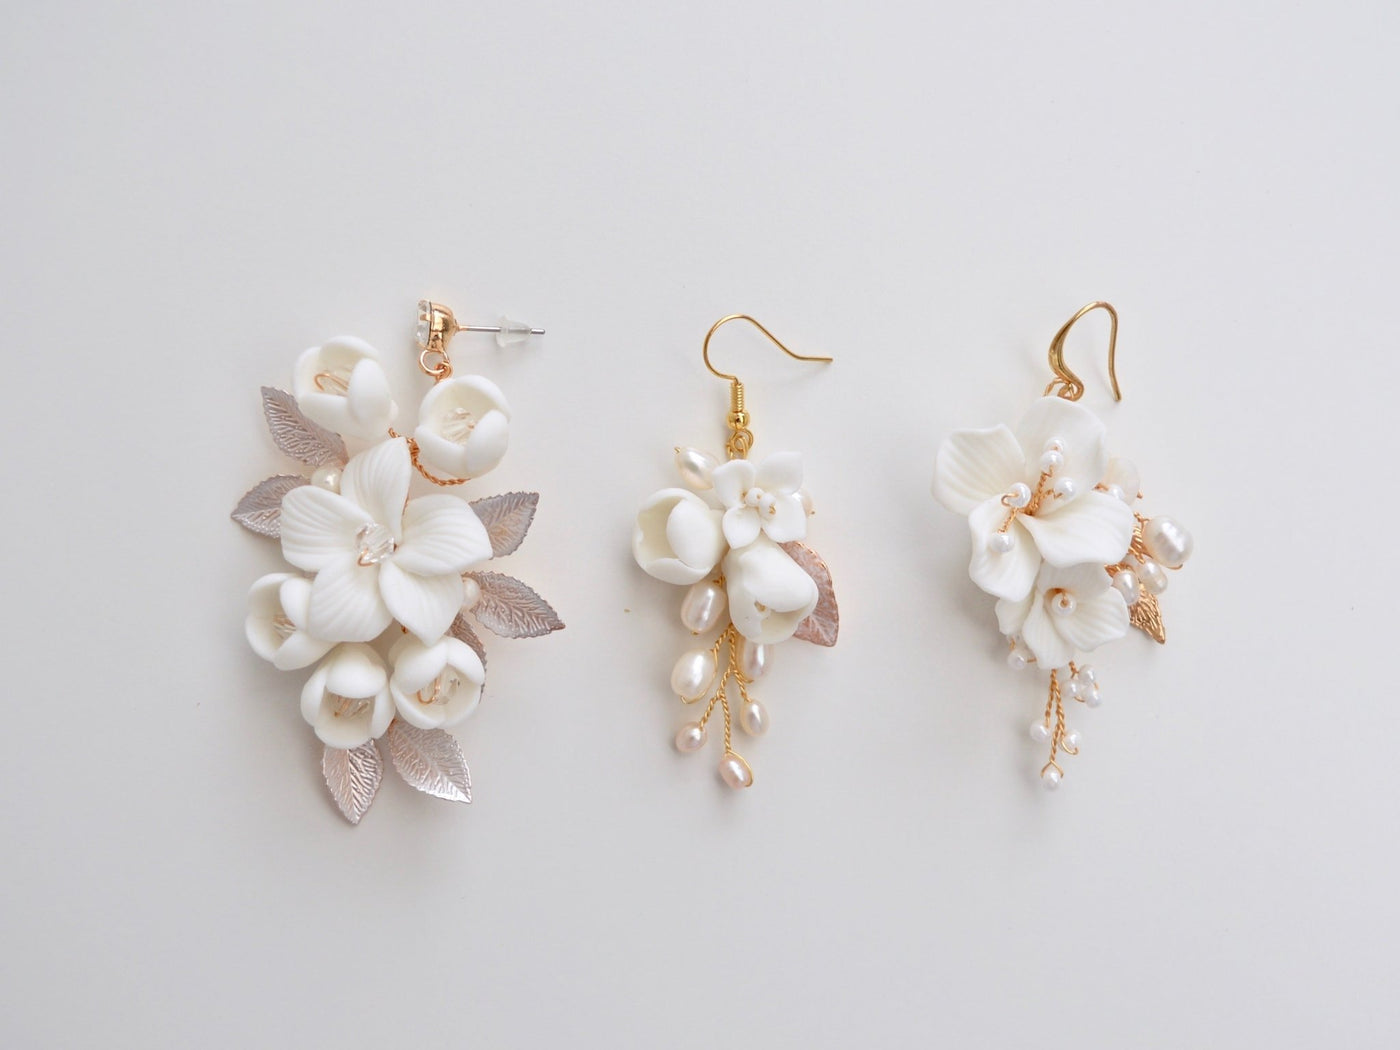 Emilie: Zarte Ohrhänger mit echten Perlen | Farbe gold, roségold, silber